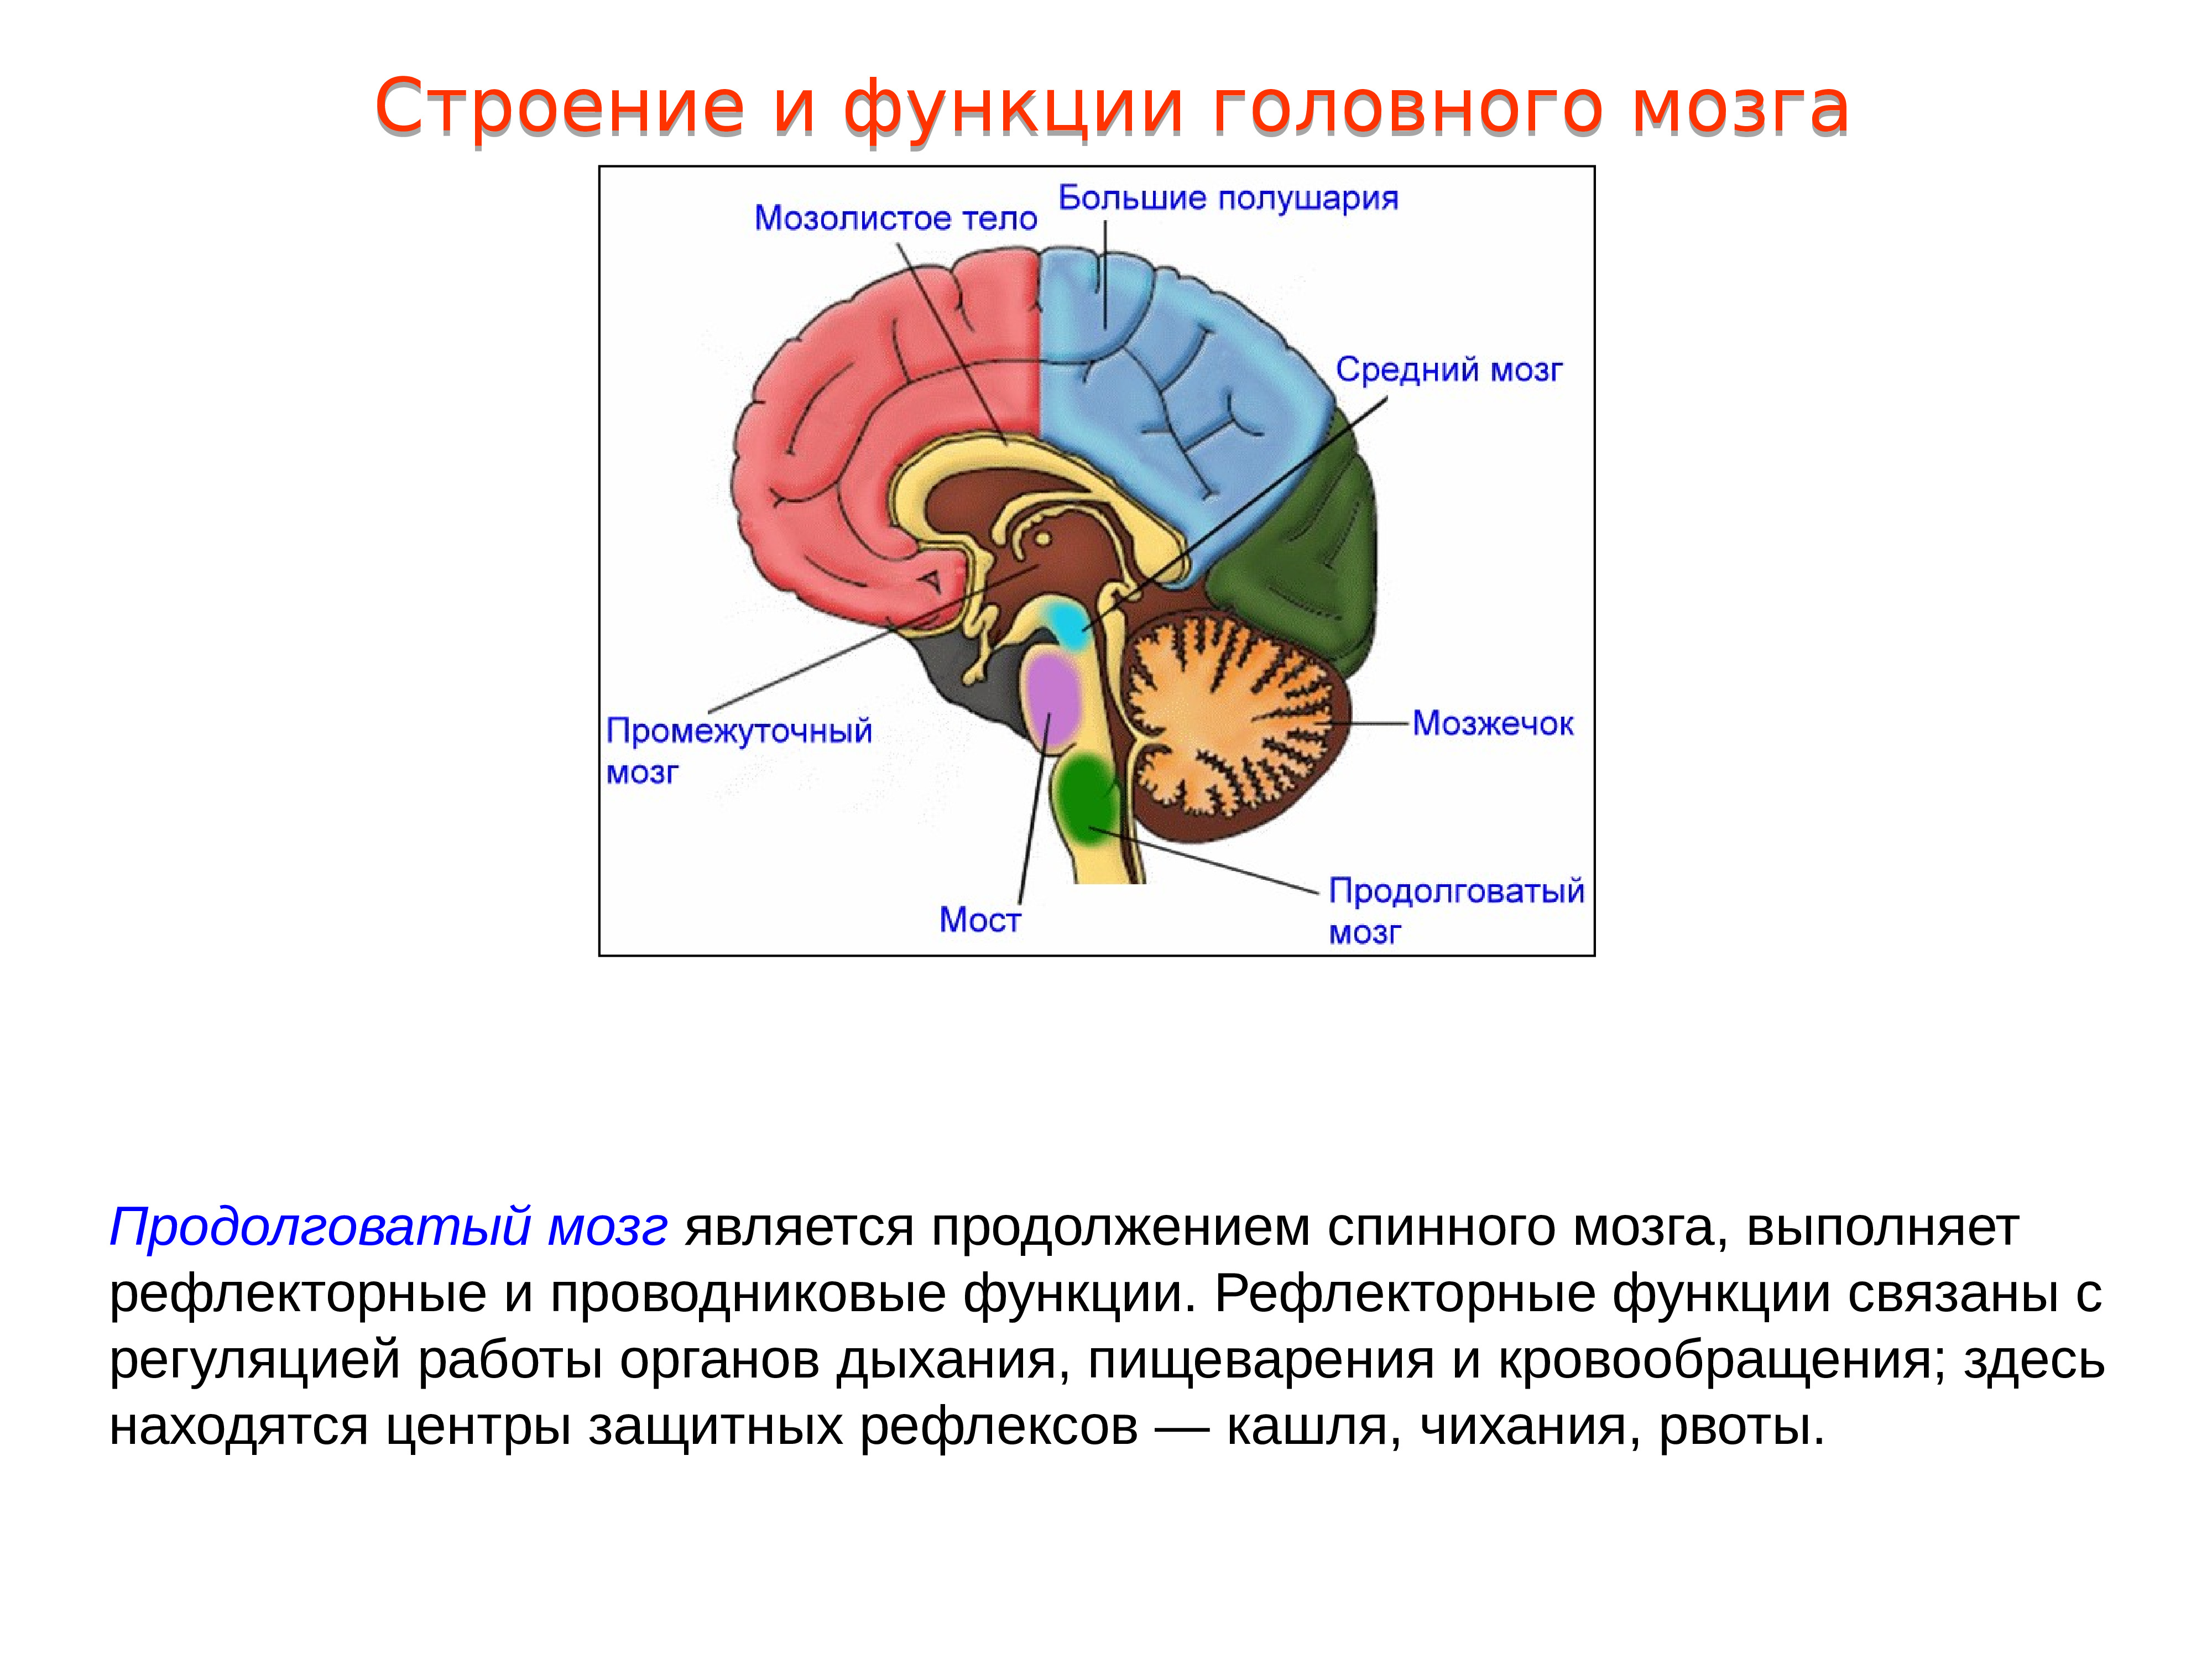 Продолговатый отдел мозга строение. Структура головного мозг задний мозг. Проводниковая функция мозжечка. Головной мозг, отделы. Строение и функции продолговатого мозга. 1. Промежуточный мозг: строение, функции.